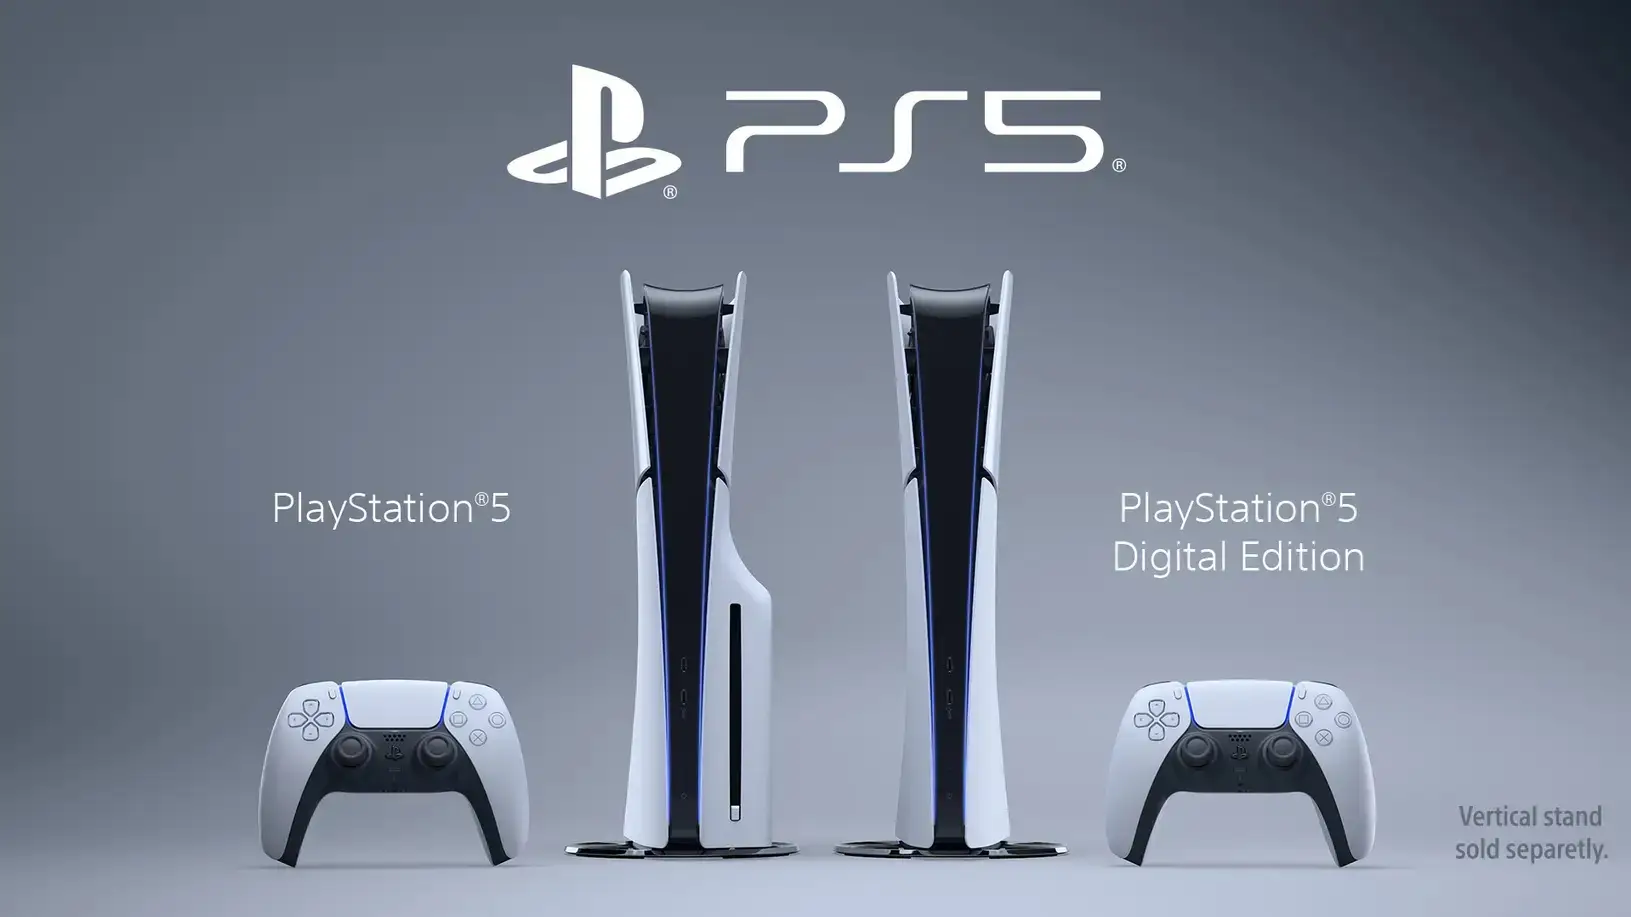 Die neue Playstation 5 ist da: Das macht Sony alles anders